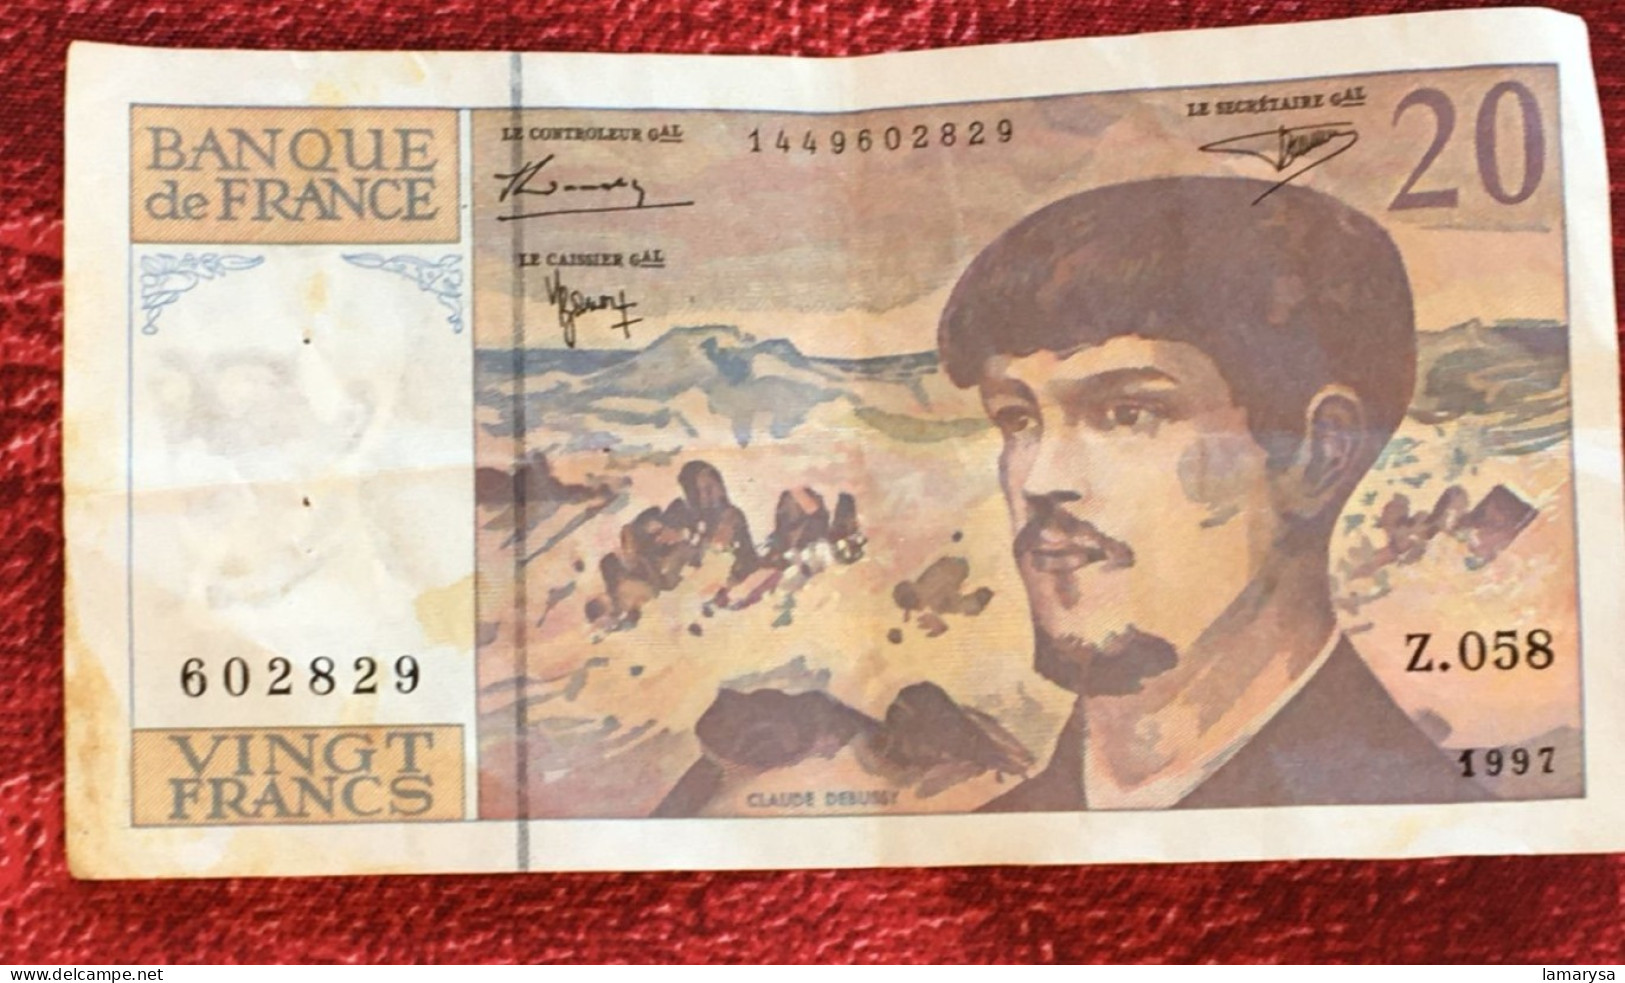 Monnaie & Billet De Banque Bank-Billet De France 1997 ''Francs''  20 Francs 1980-1997 Z 058 ''Debussy'' - 20 F 1980-1997 ''Debussy''